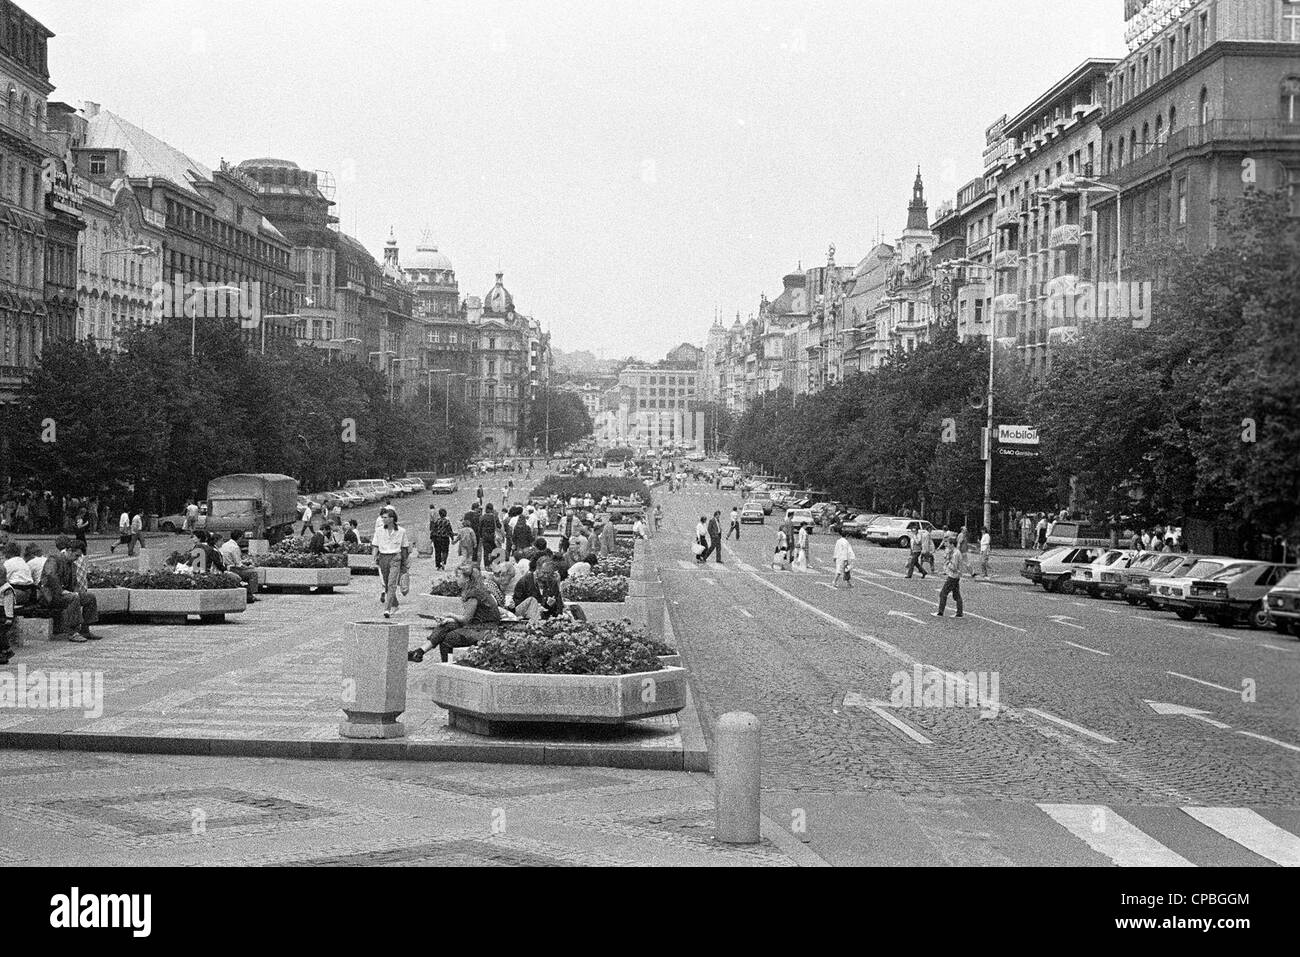 Vaclavske namesti, Praga - la capitale della Repubblica ceca nell ultimo decennio del comunismo regime. Foto scattata nel 1987. anno. Foto Stock